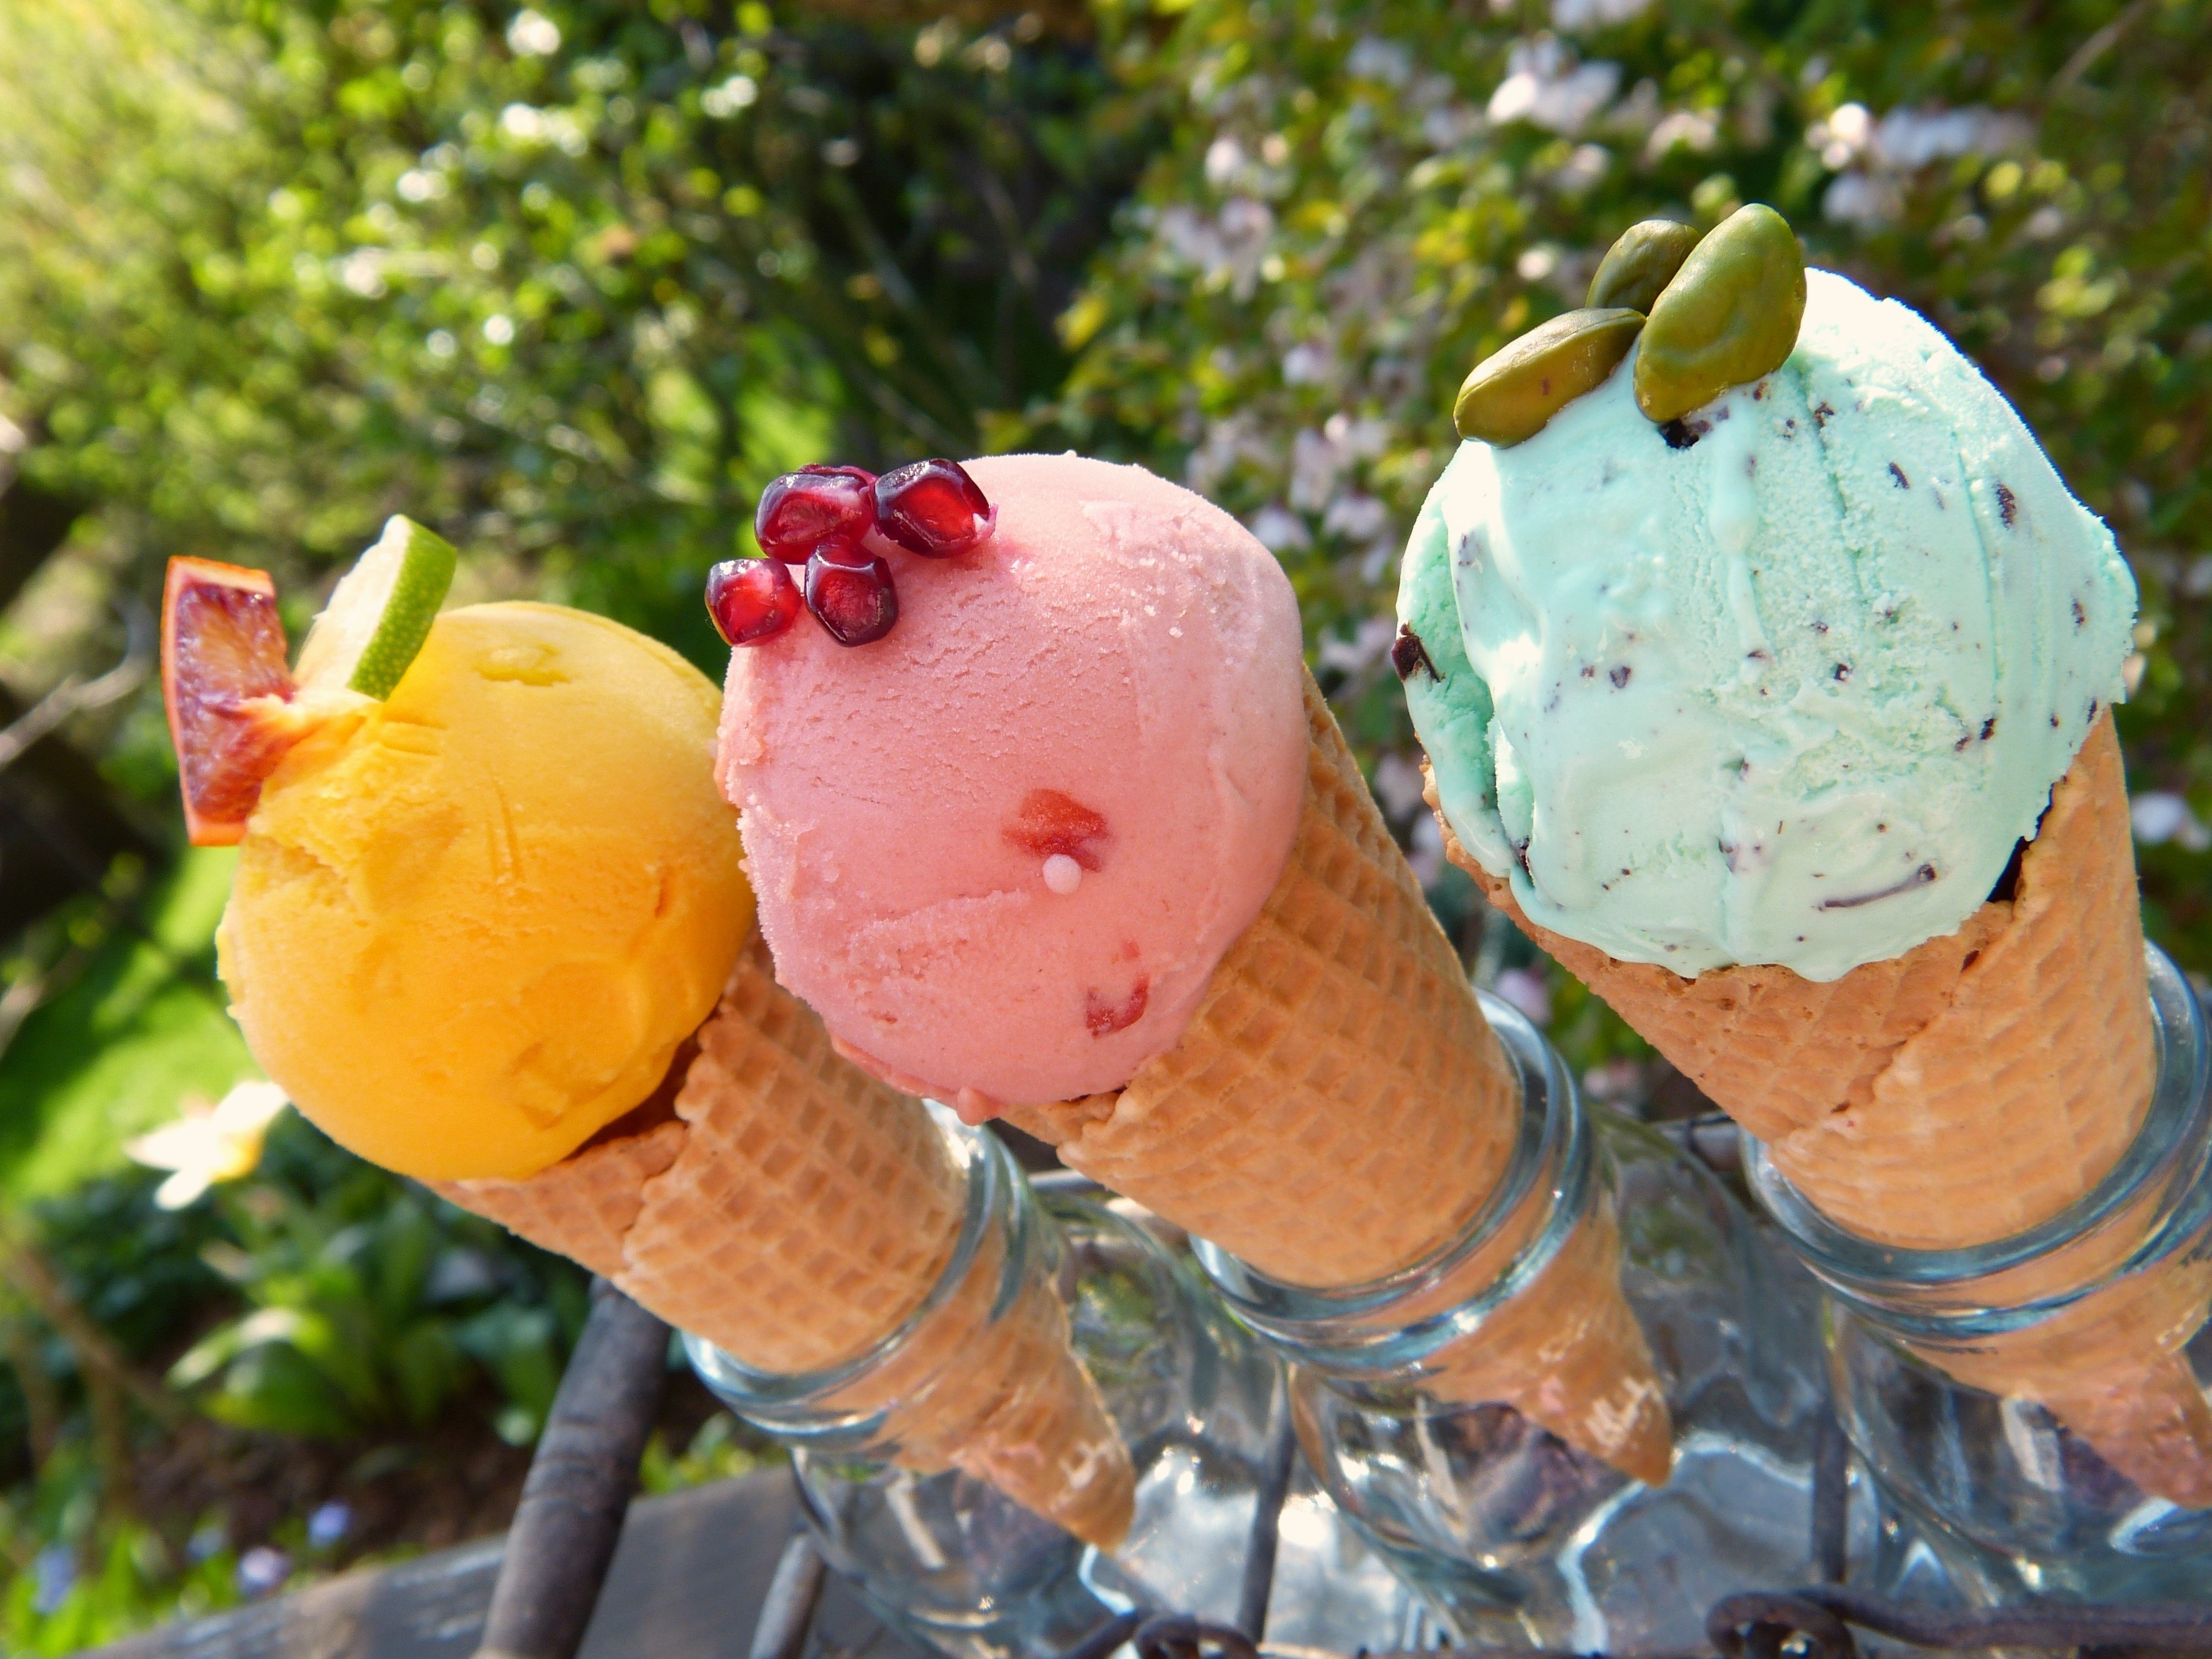 Мороженки 2. Айс Крим мороженщик. Красивое мороженое. Натуральное мороженое. Мороженое в пластиковых фруктах.